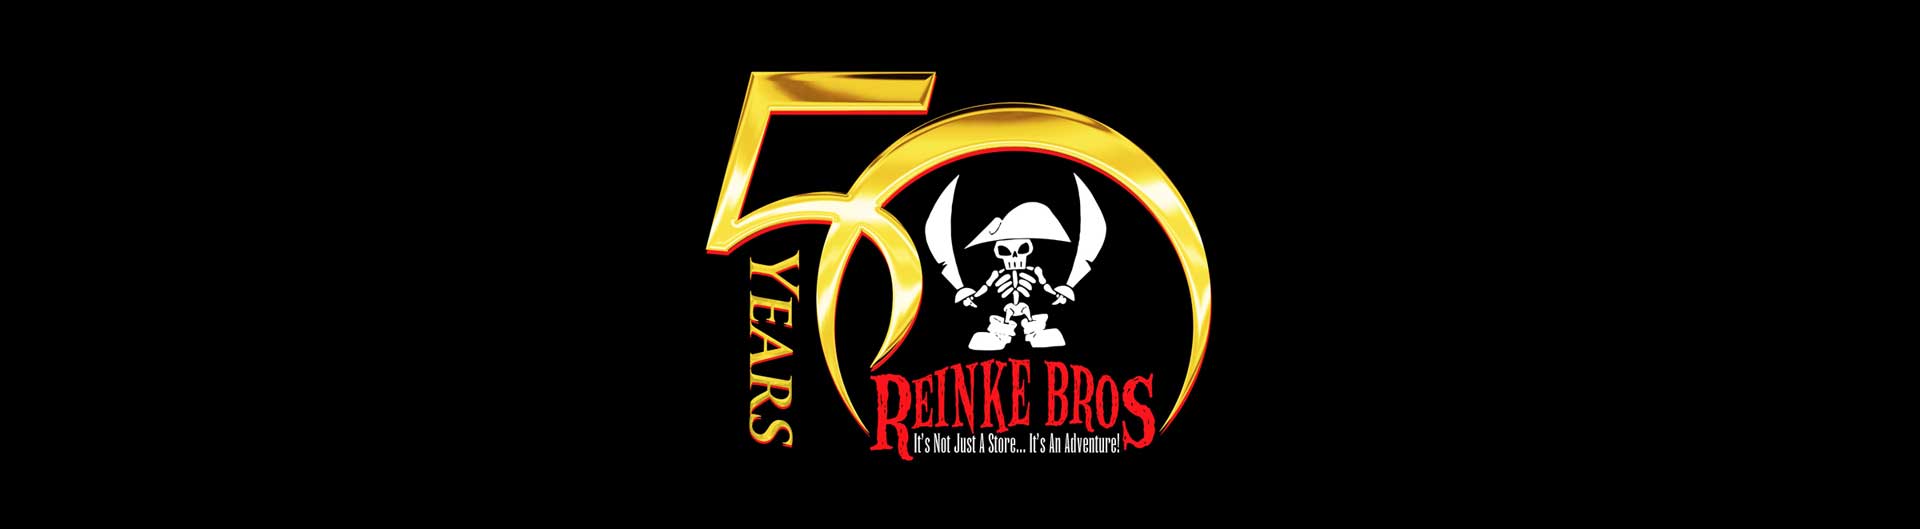 Reinke Logo - Reinke Brothers Store - Reinke Brothers